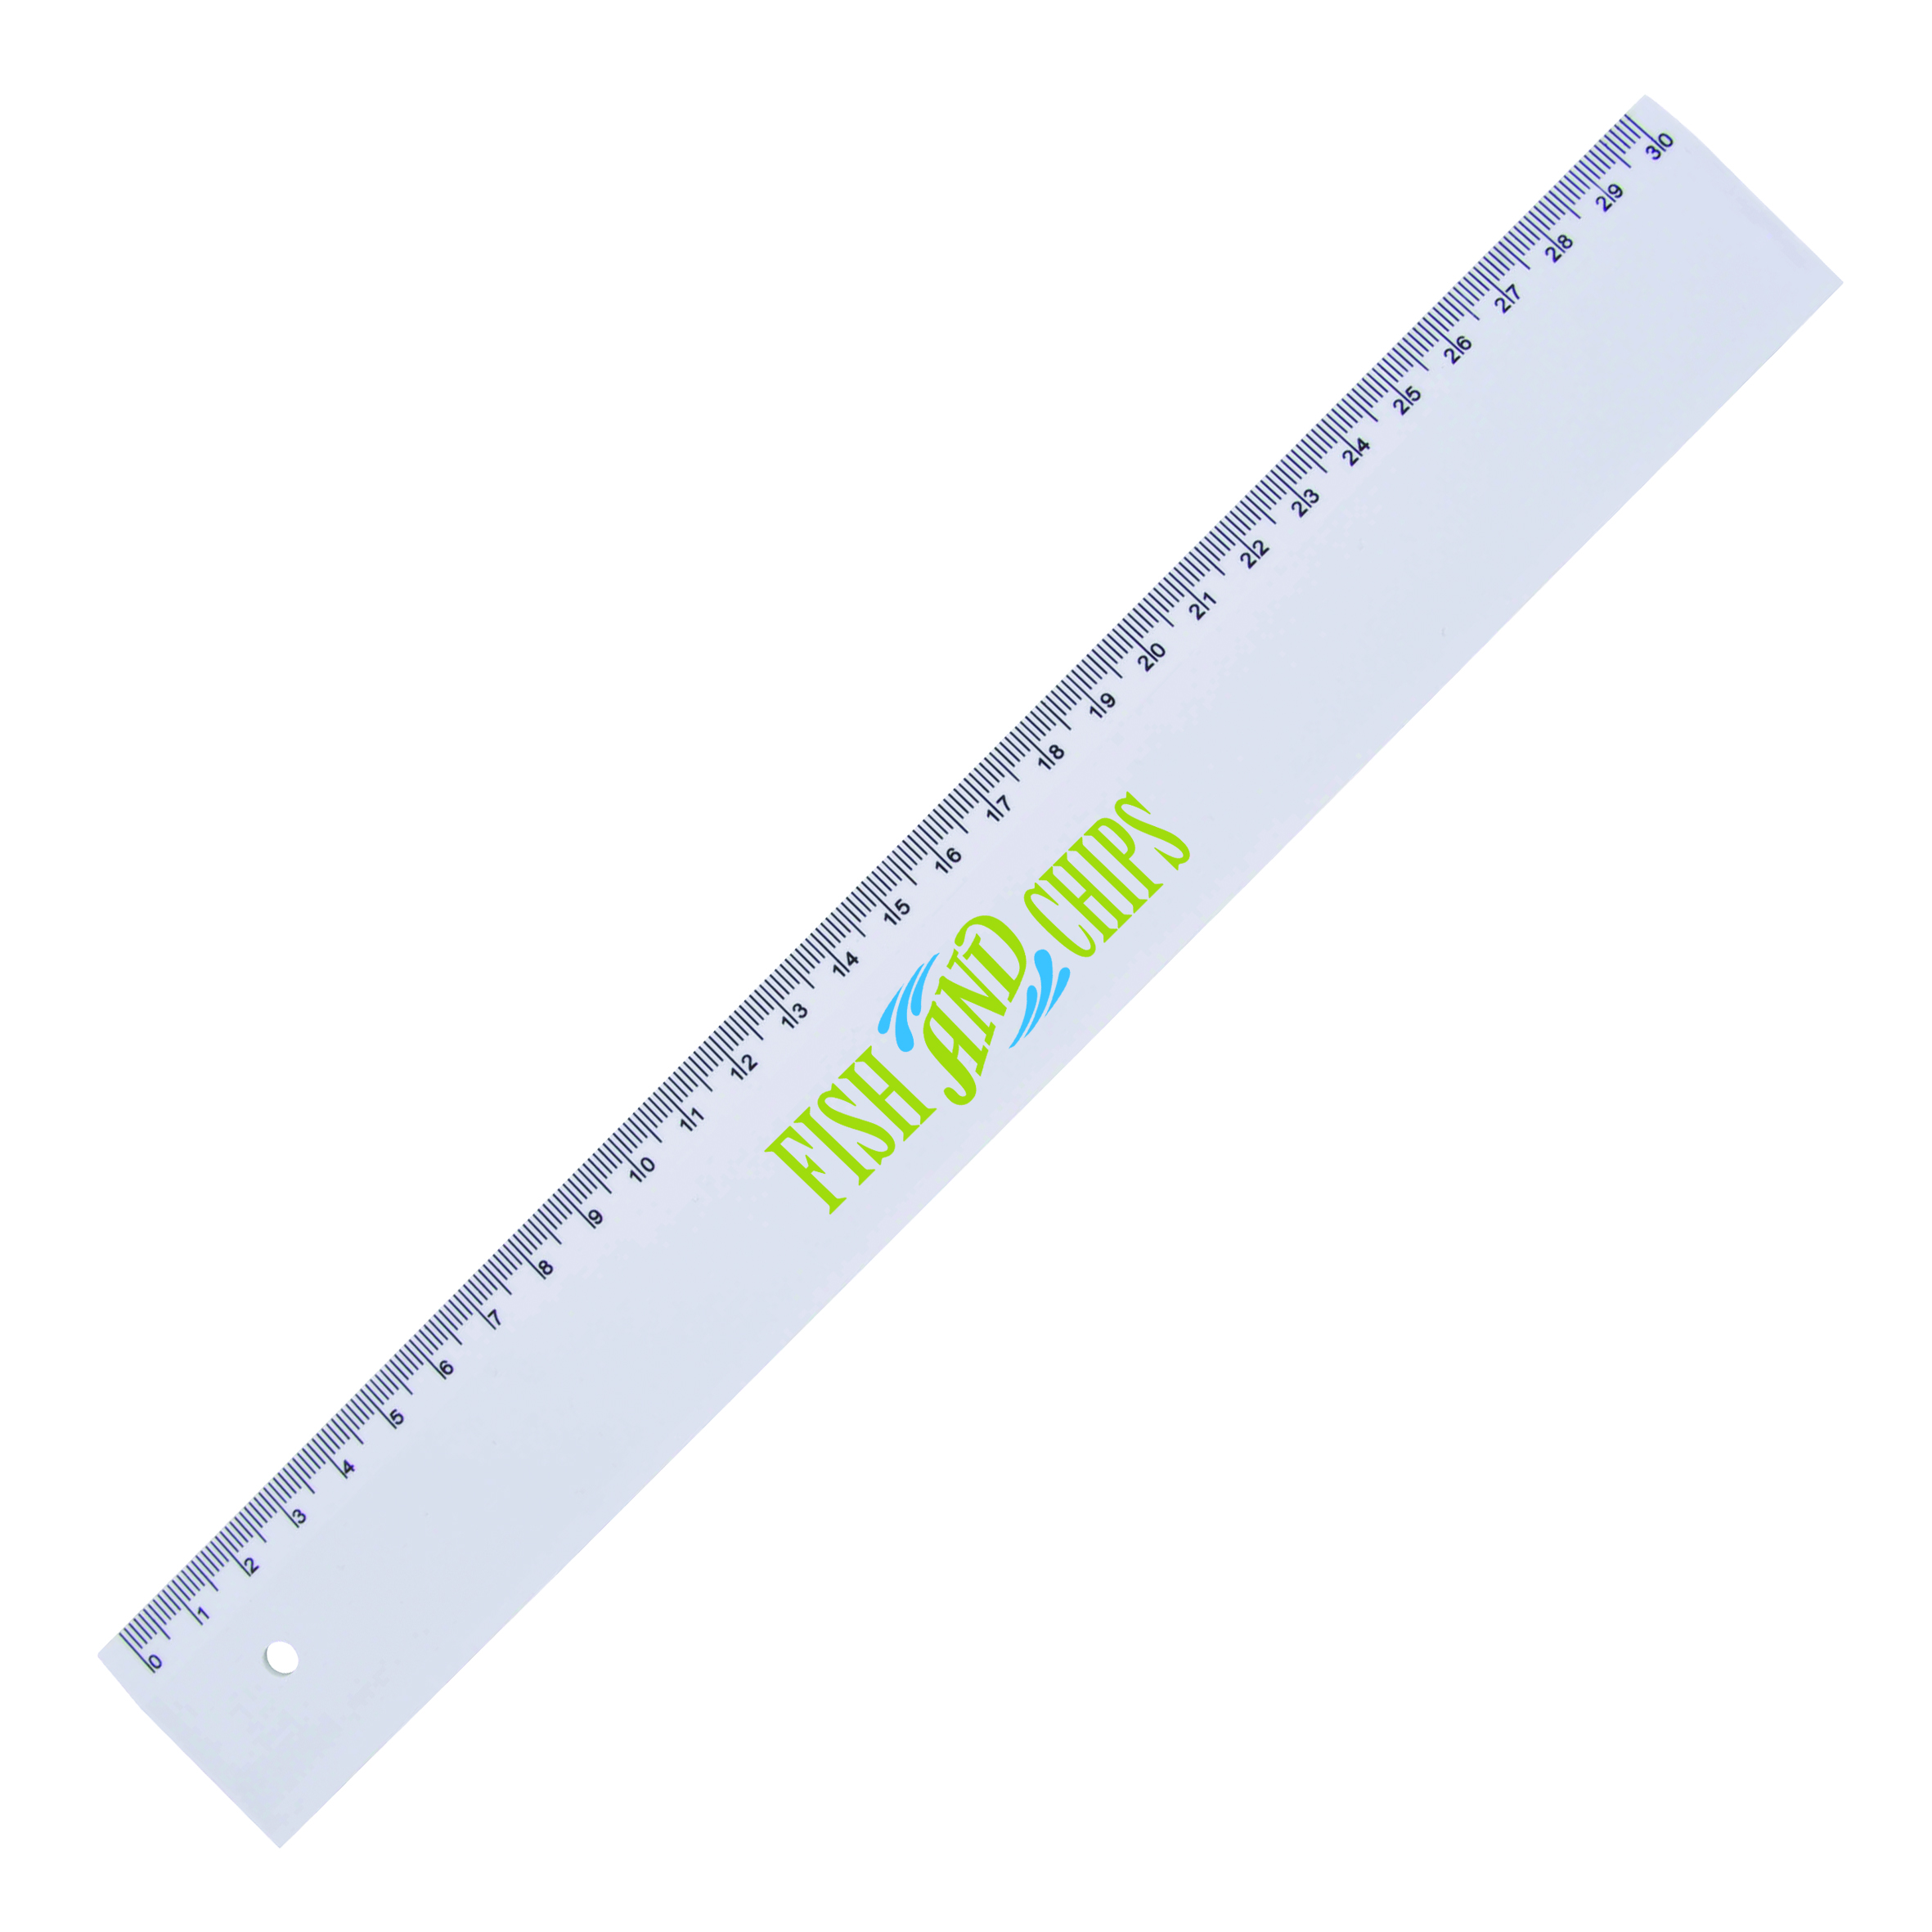 x817565 02 - Plastic ruler (30cm)